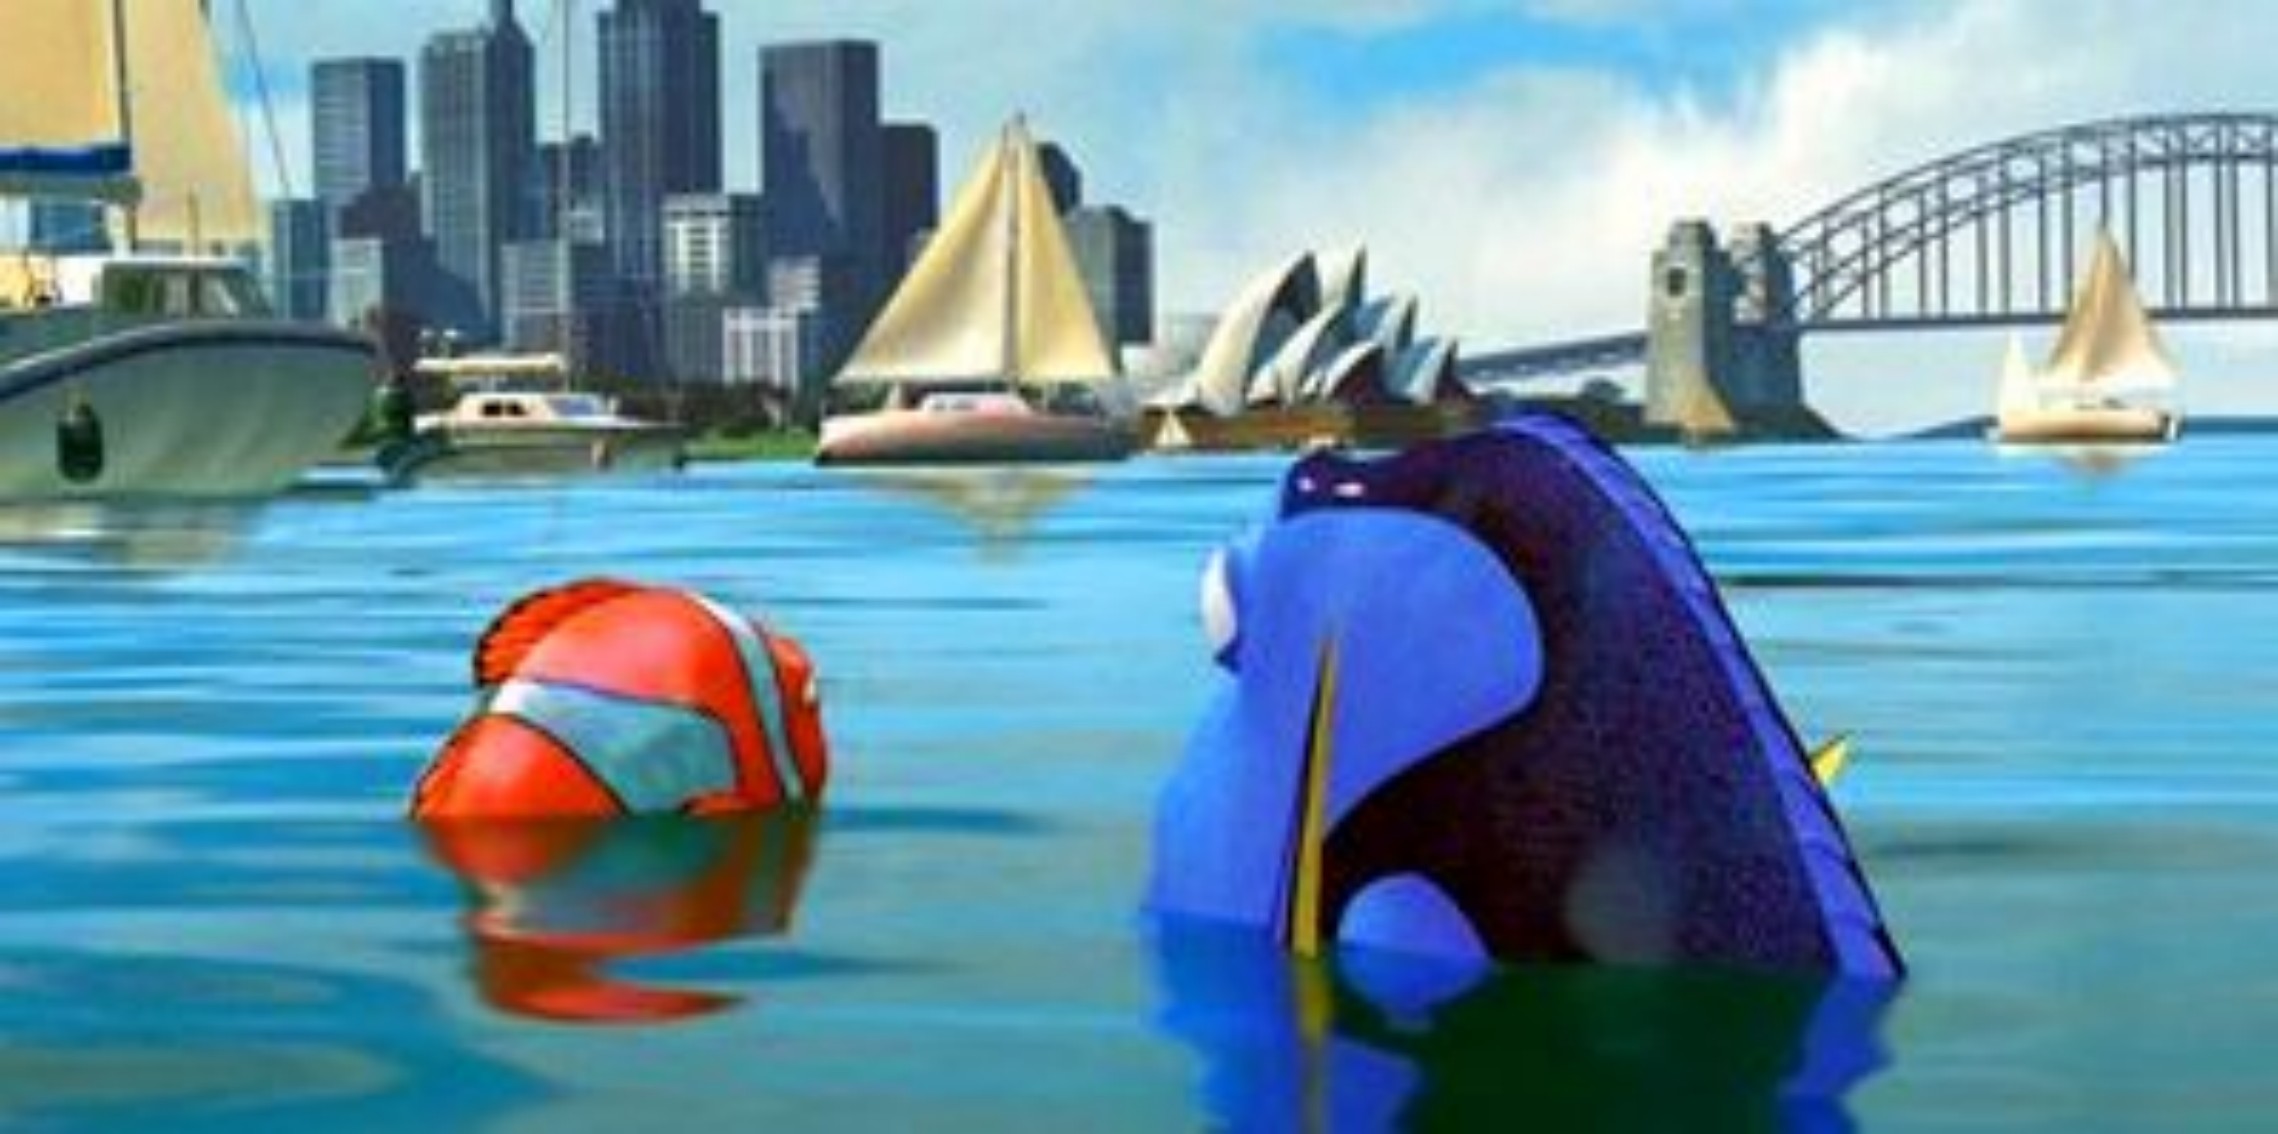 Immagini Alla ricerca di Nemo - La baia di Sidney